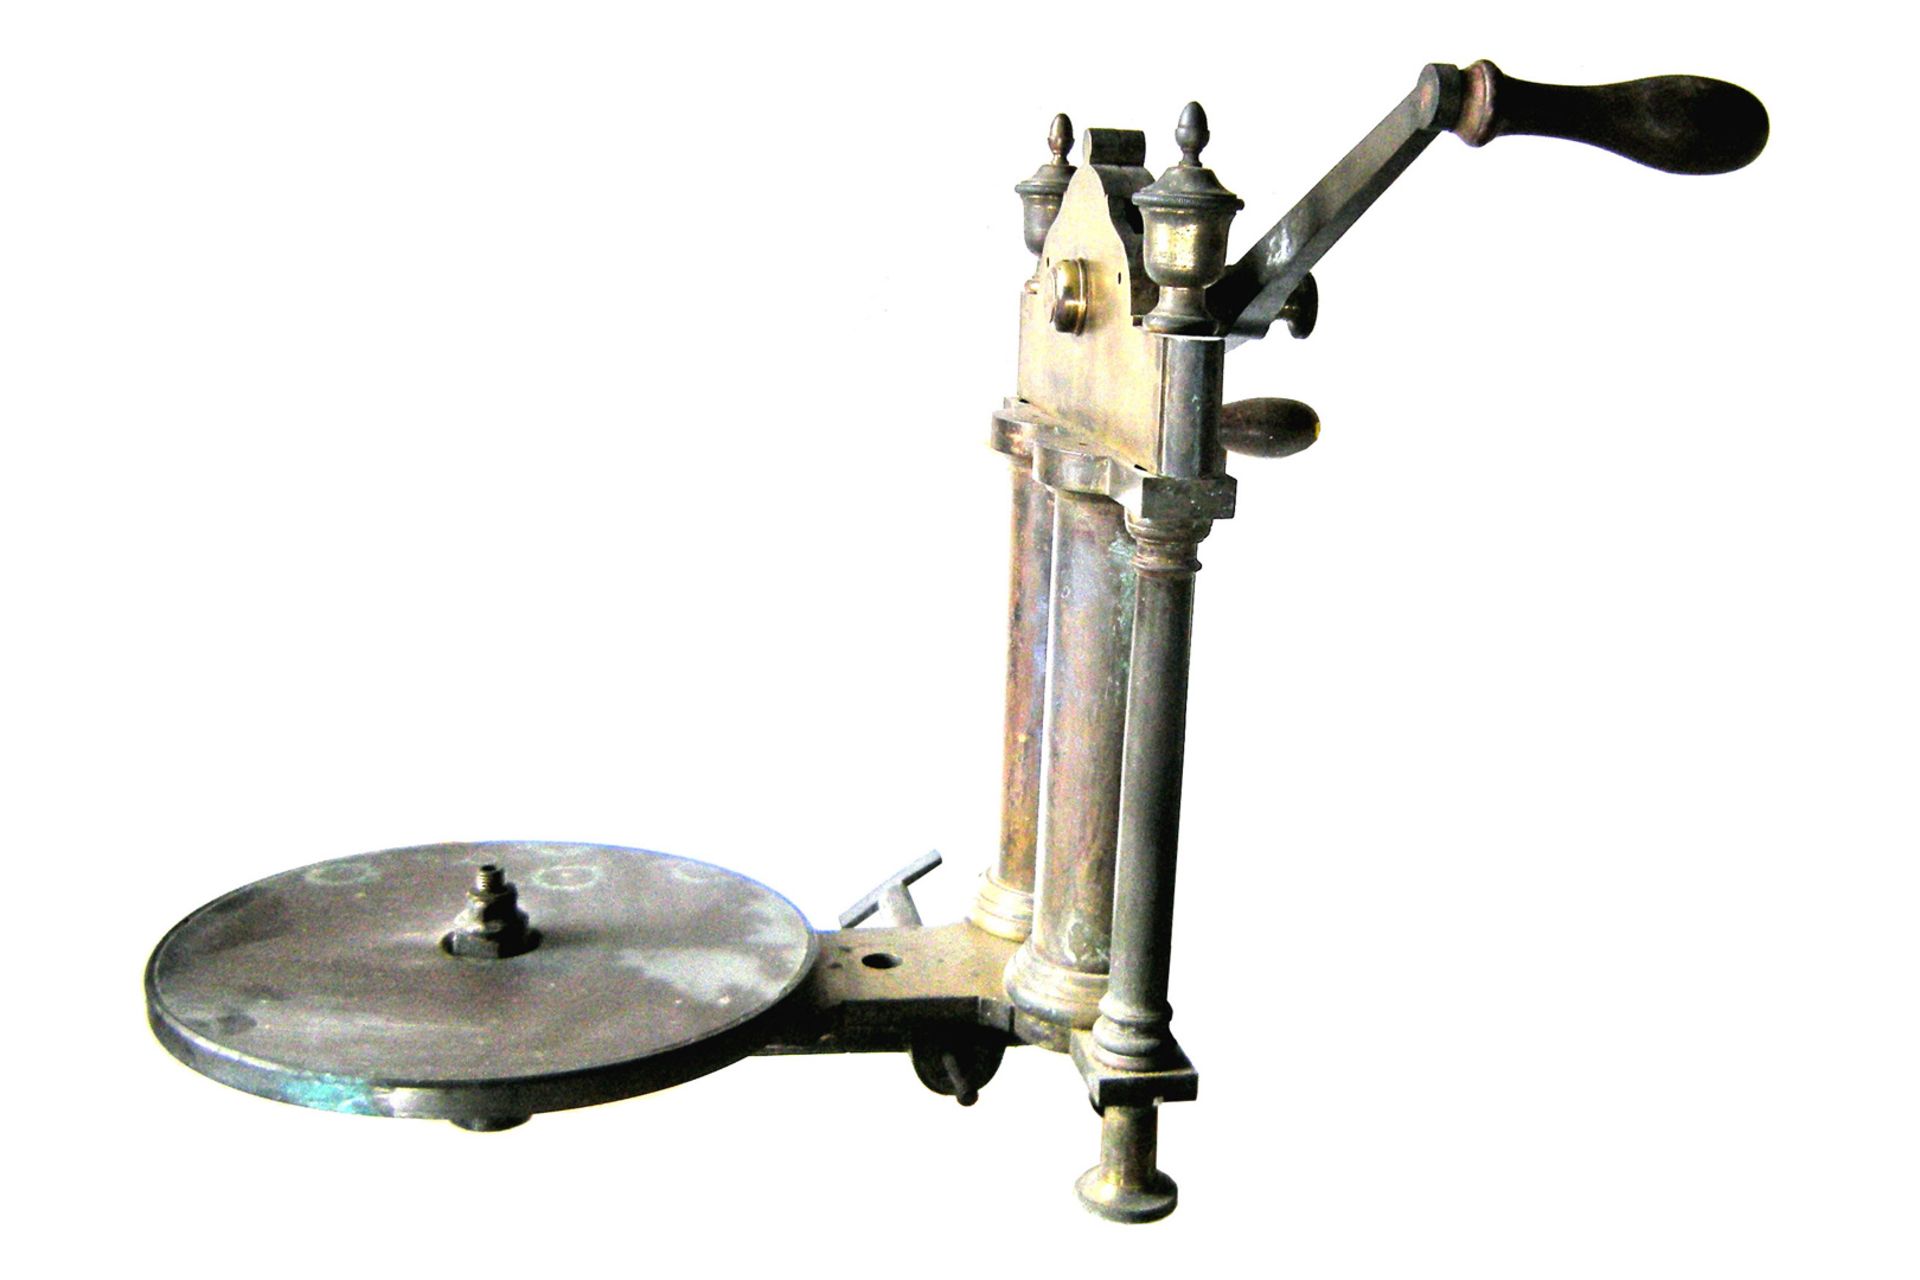 Zweistiefelige Vakuumpumpe, ohne Glaskolben, 1880, Abmessung 50x33x43cm, ca. 10kg - Bild 6 aus 8